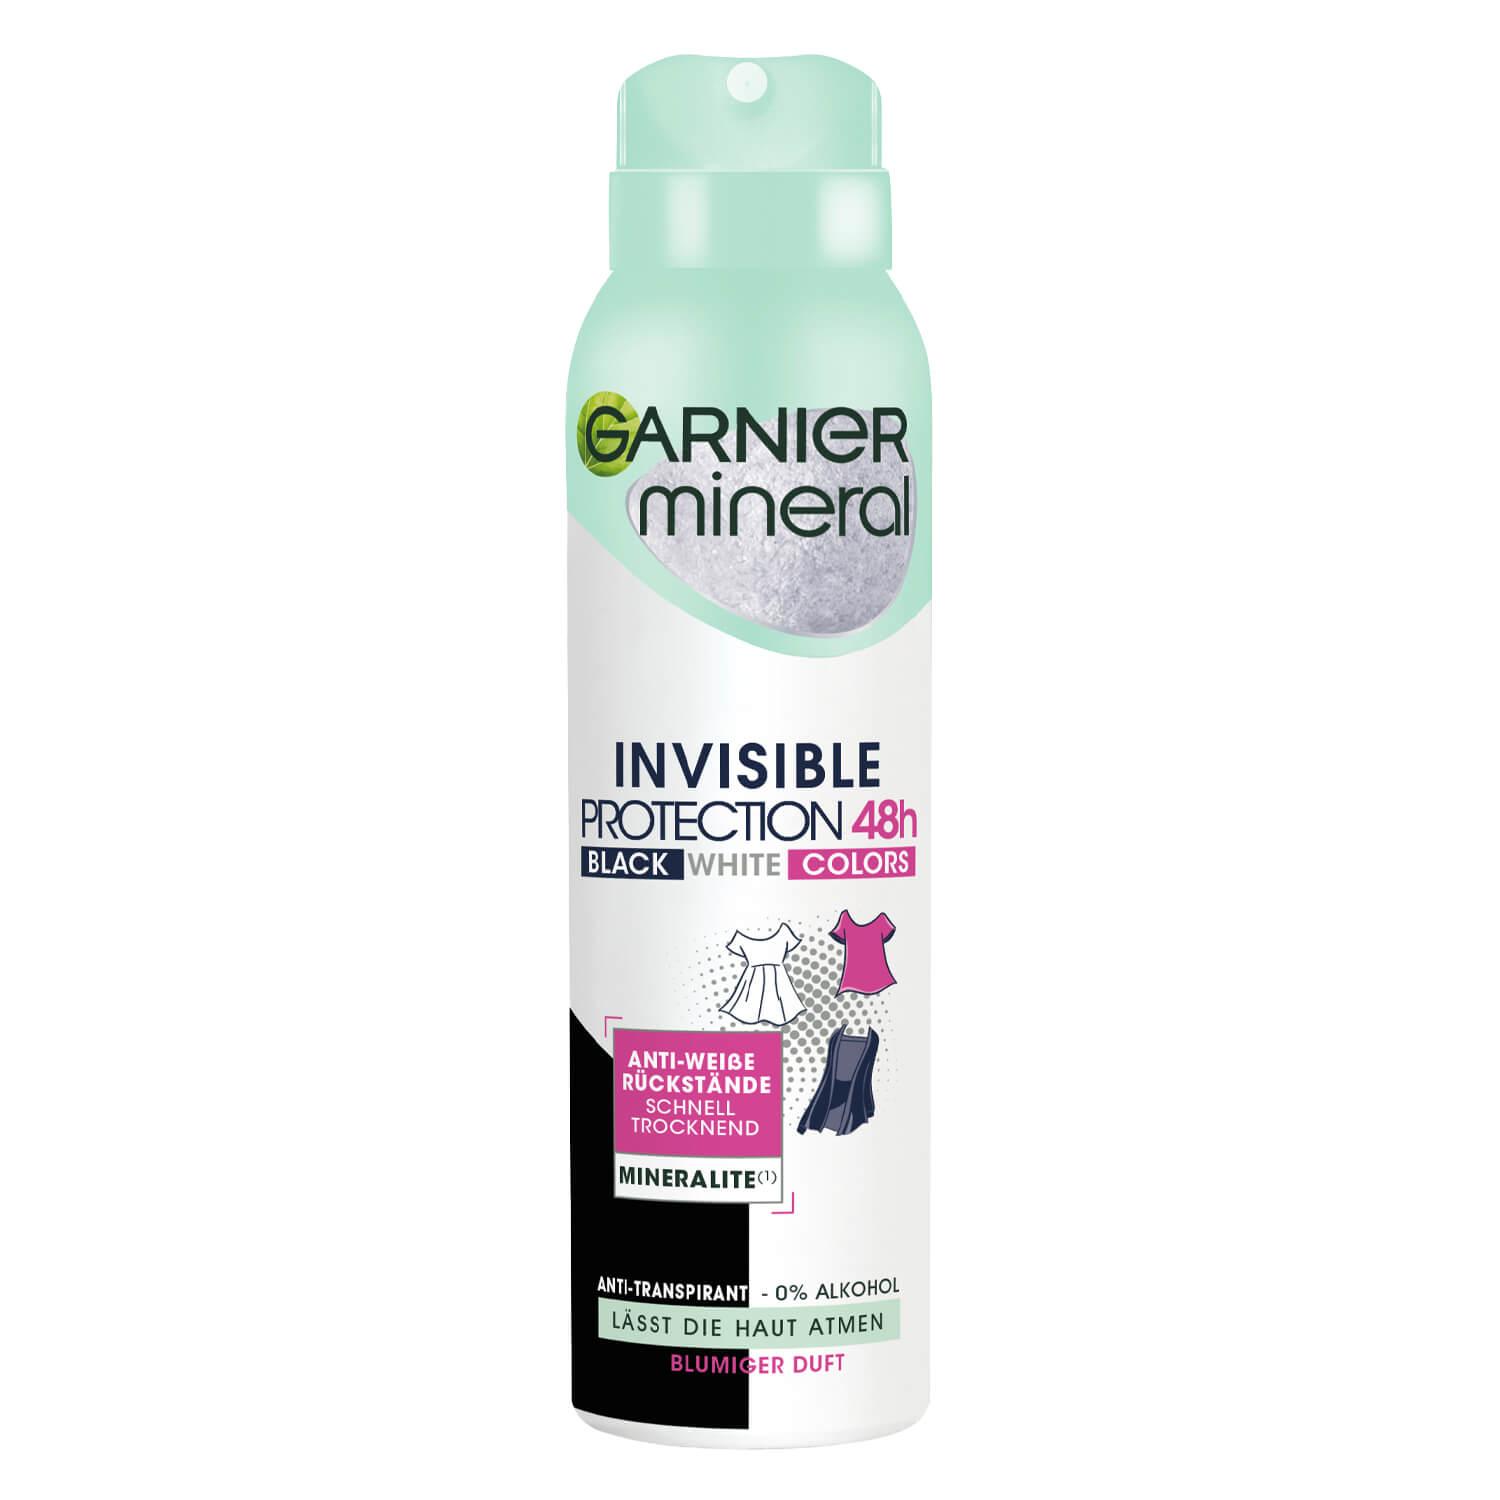 Garnier Mineral - Invisible Black, White & Colors Spray